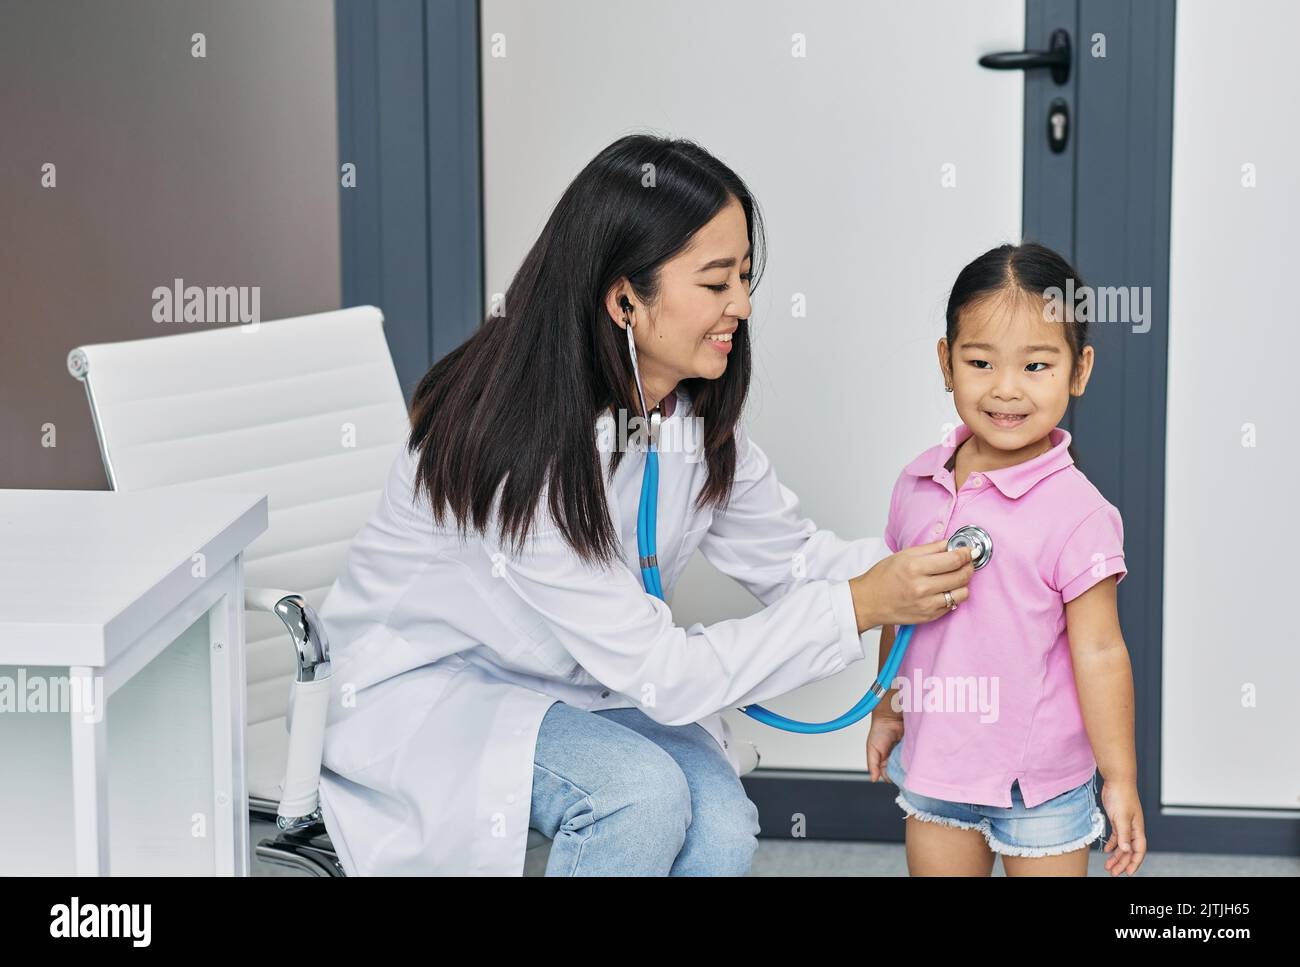 Pédiatre ausculting poumons de petite fille asiatique en utilisant stéthoscope pendant la consultation du médecin en clinique médicale Banque D'Images